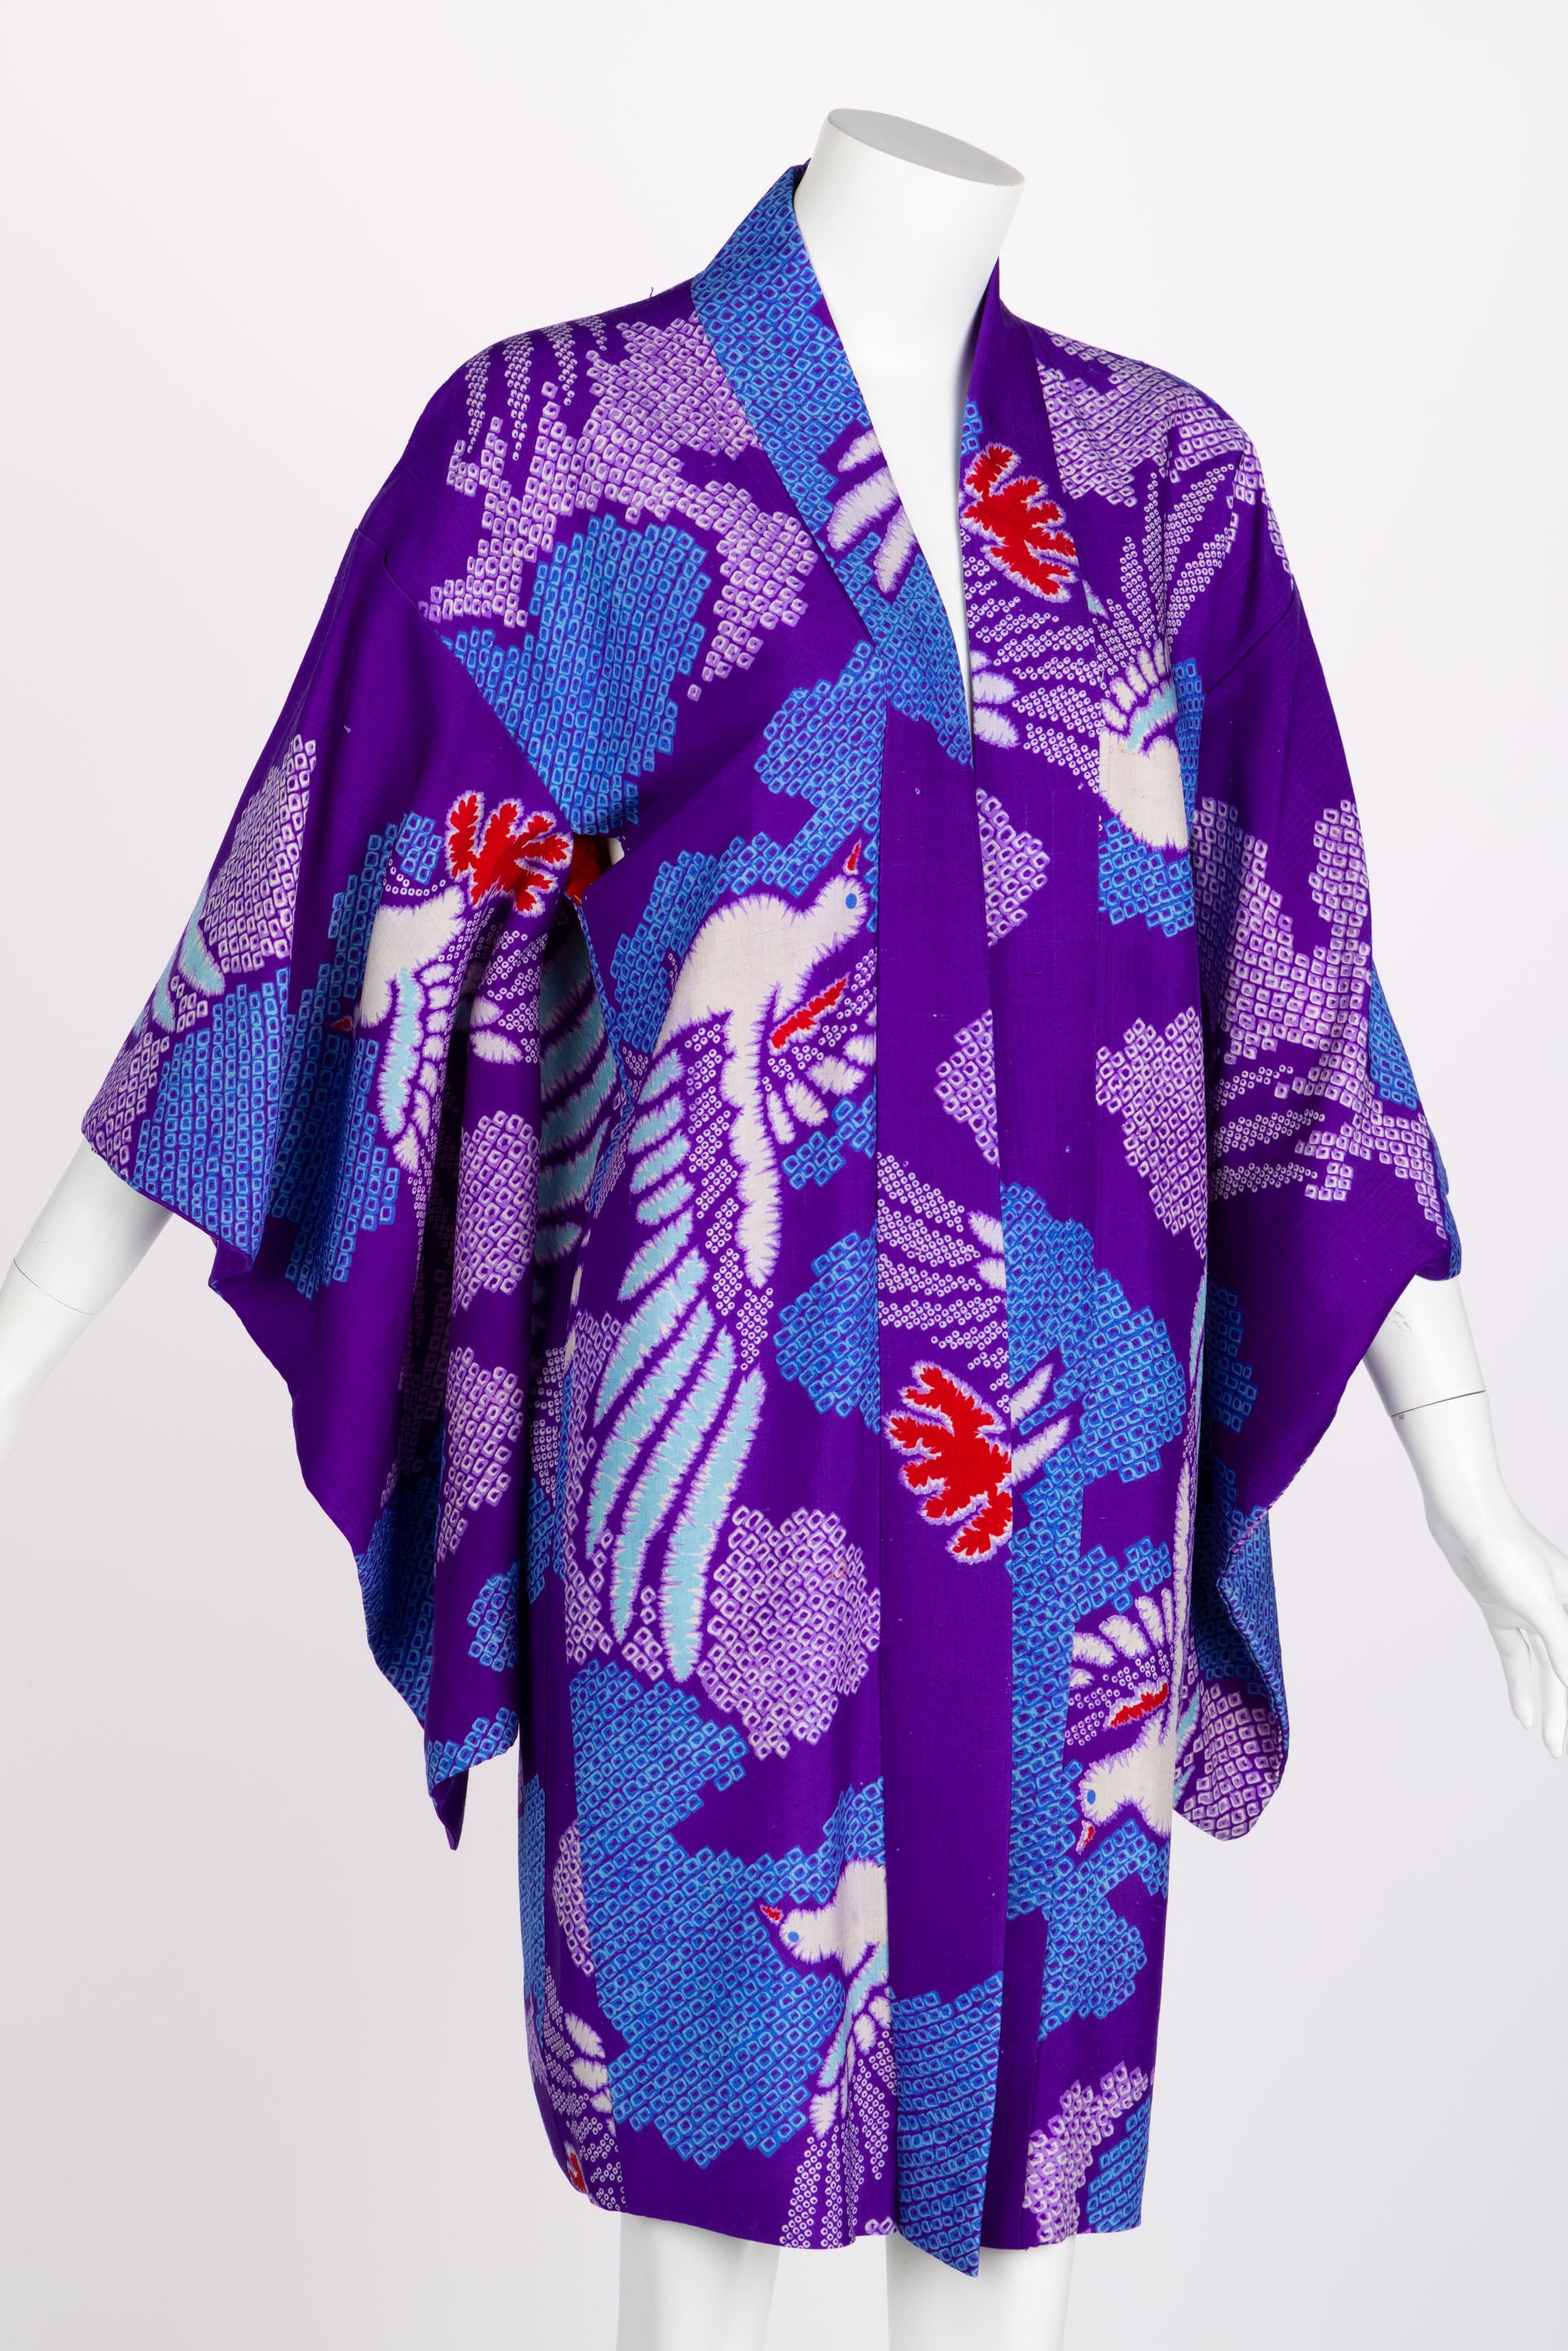 Während die Vielfalt und Besonderheit der Kimonoarten komplex sein kann, ist der Schnitt eines Kimonos bewusst einfach gehalten. Minimale Nähte lassen die Schönheit des Stoffes ungehindert durch Abnäher und Biesen zur Geltung kommen. Die